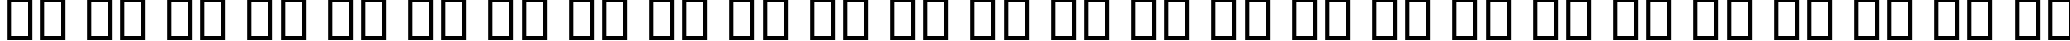 Пример написания английского алфавита шрифтом B Setareh